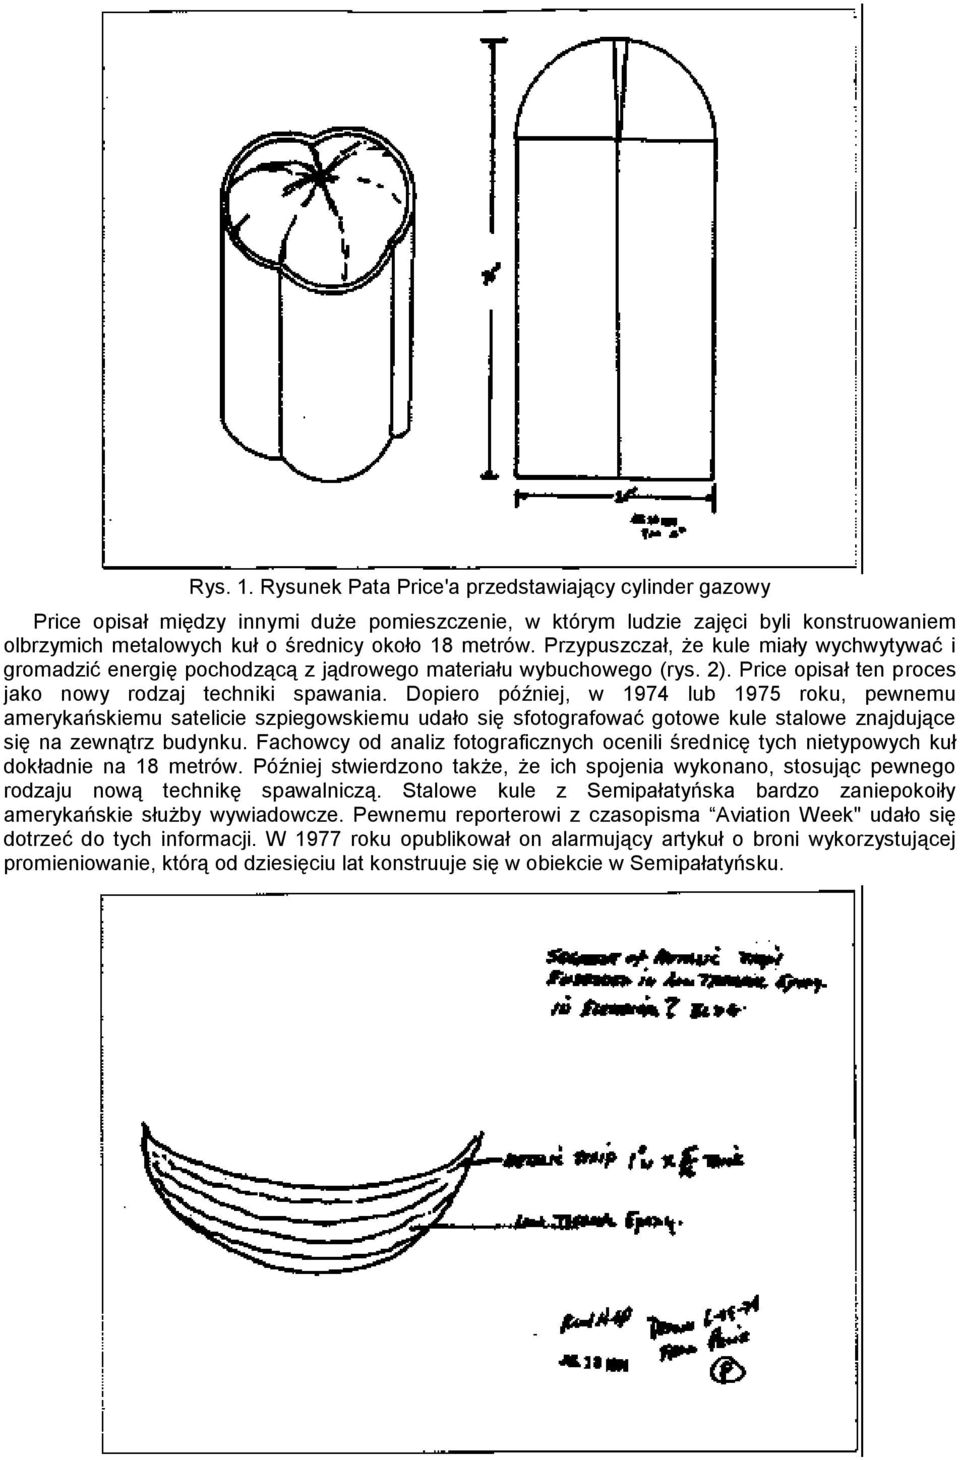 Przypuszczał, że kule miały wychwytywać i gromadzić energię pochodzącą z jądrowego materiału wybuchowego (rys. 2). Price opisał ten proces jako nowy rodzaj techniki spawania.